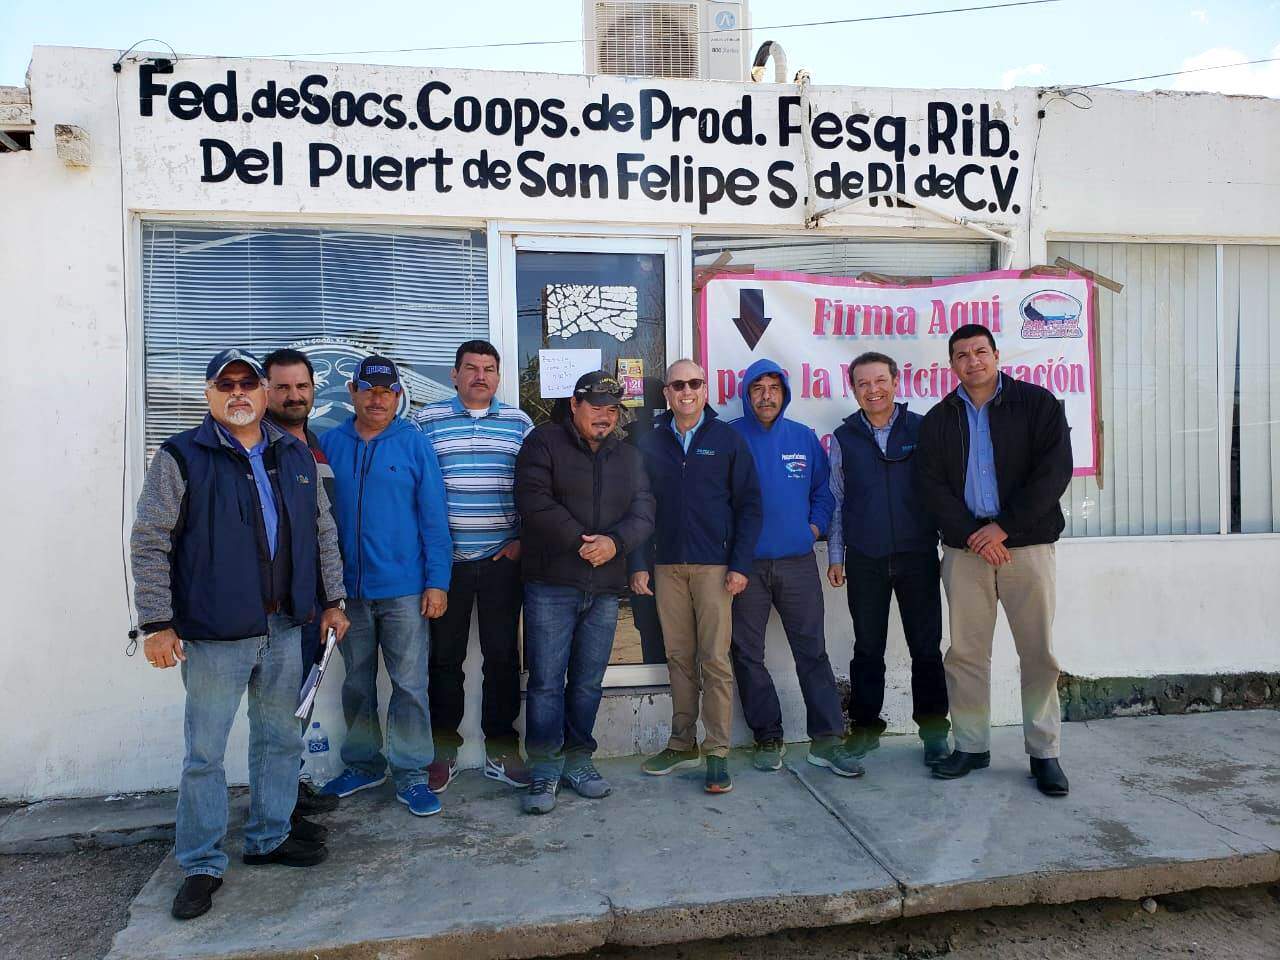 Ofrece Pesca apoyo a sanfelipenses tras reunión con la Federación